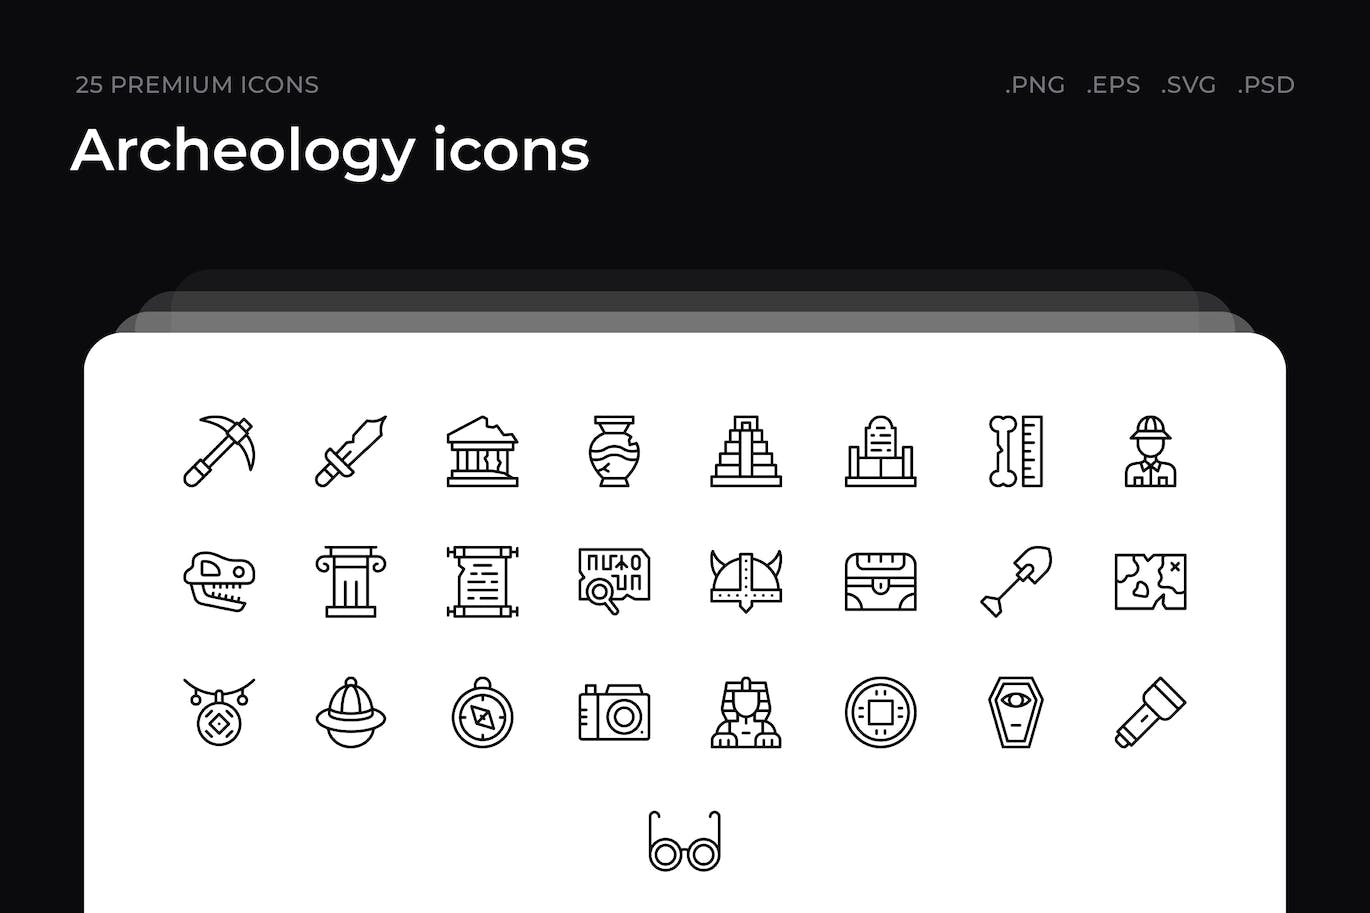 25枚考古学主题简约线条矢量图标 Archeology icons 图标素材 第1张